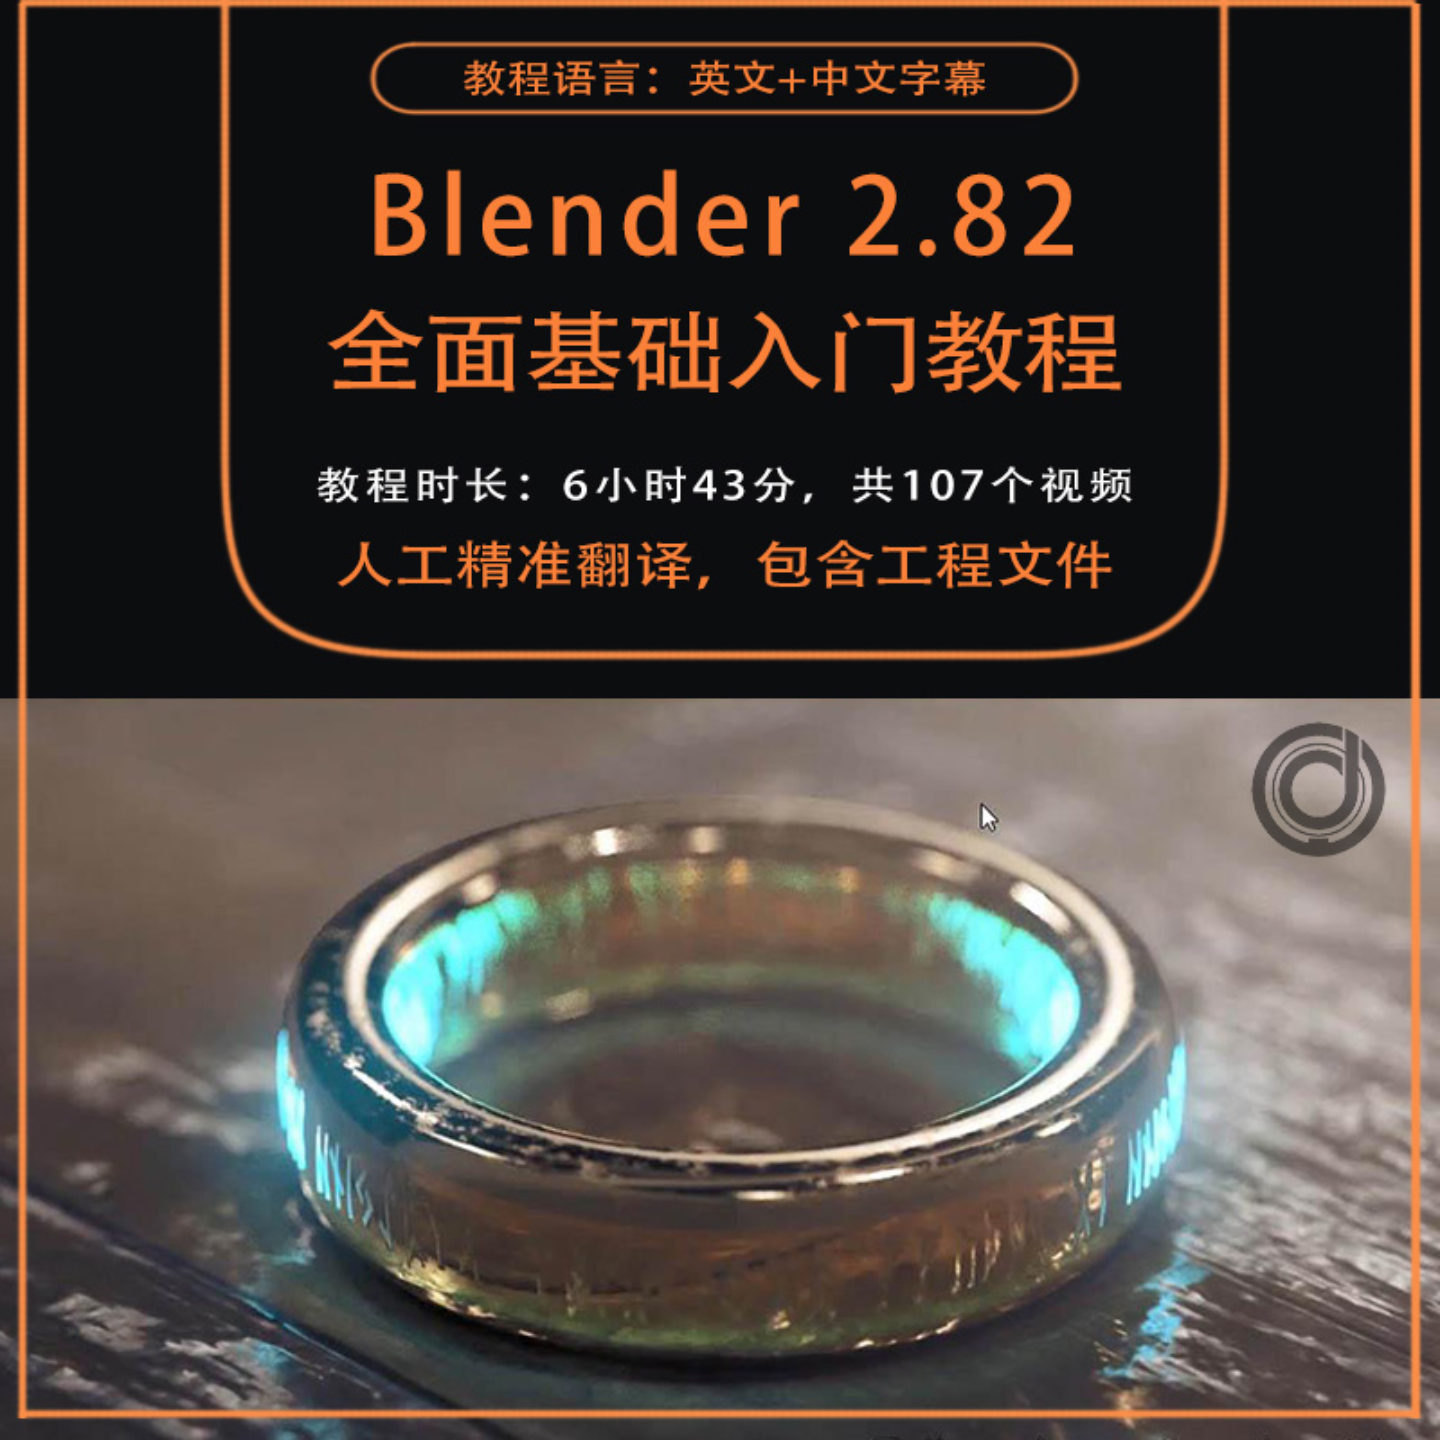 【免费下载】Blender全面基础入门视频教程建模纹理材质渲染三部合集